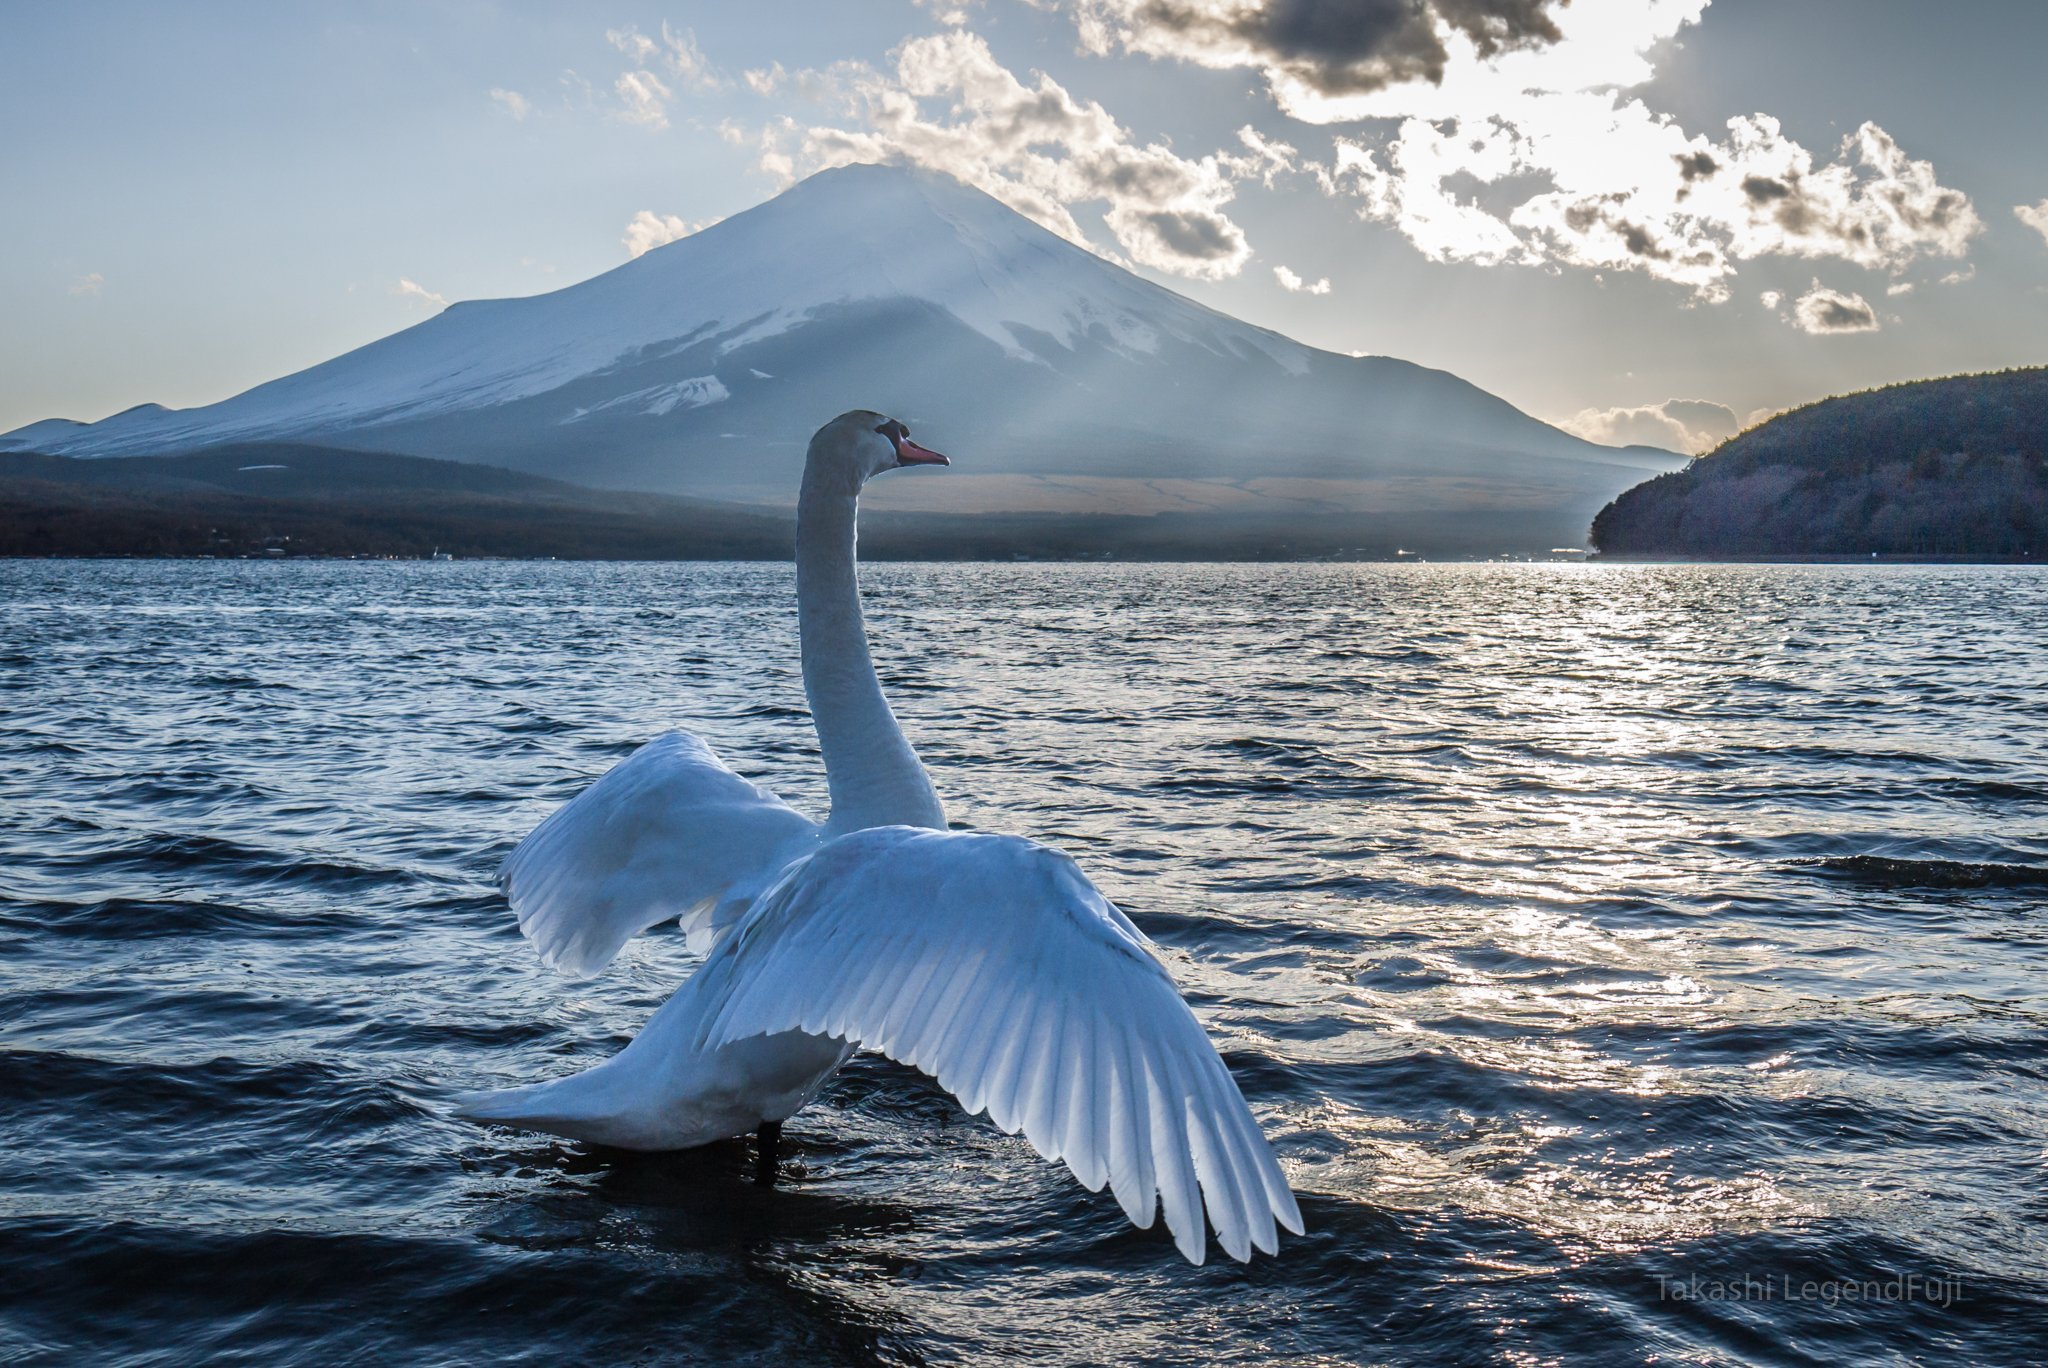 fuji,mountain,Japan,lake,water,swan,, Takashi